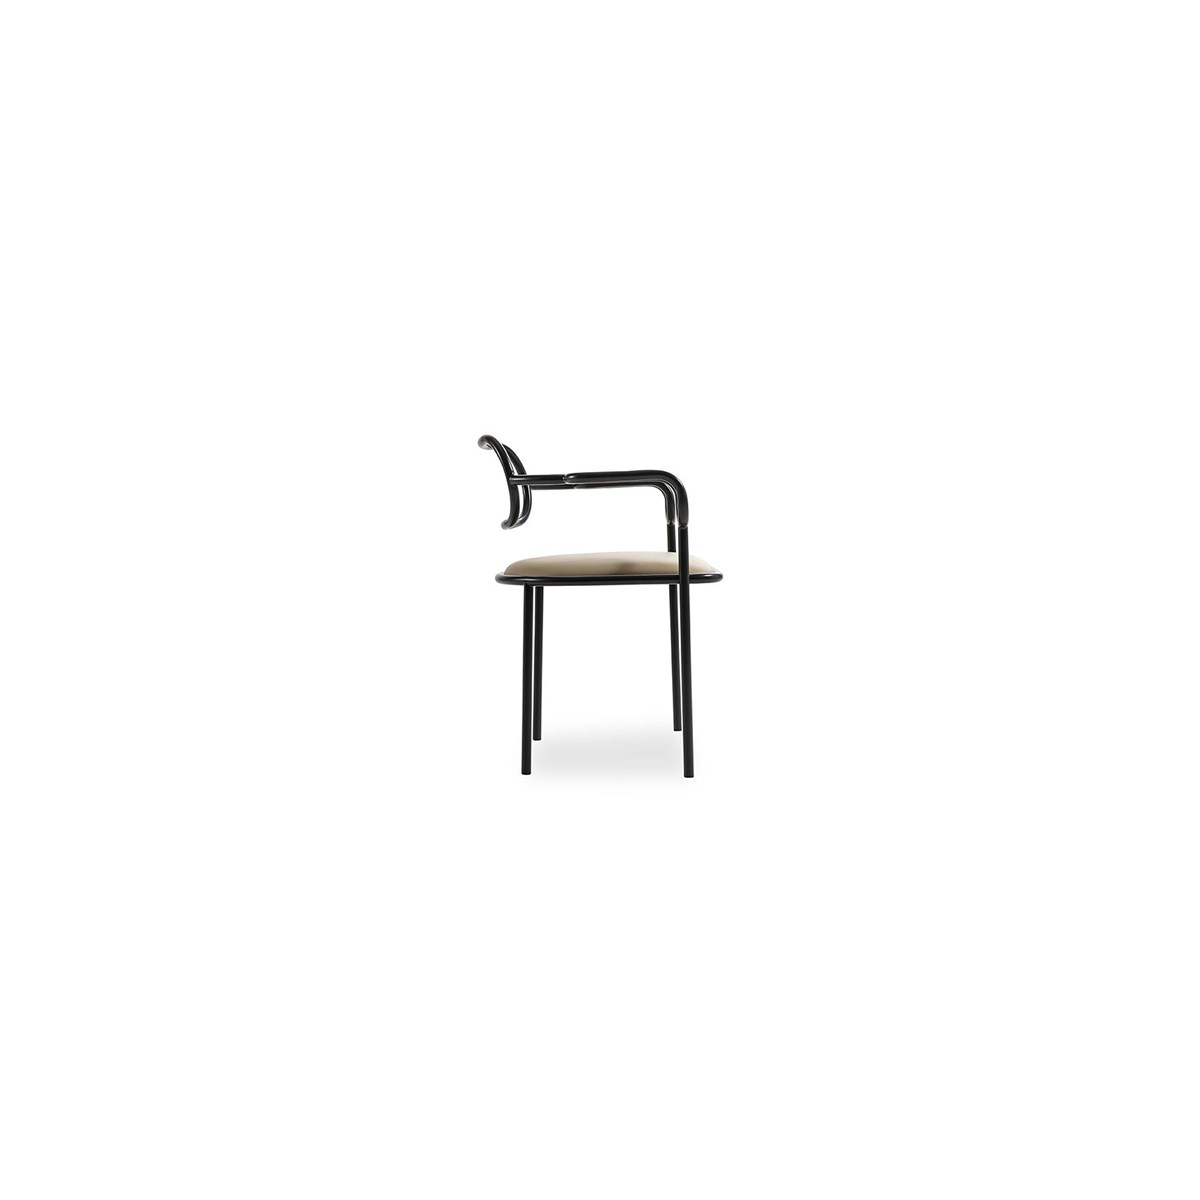 01 Chair 1